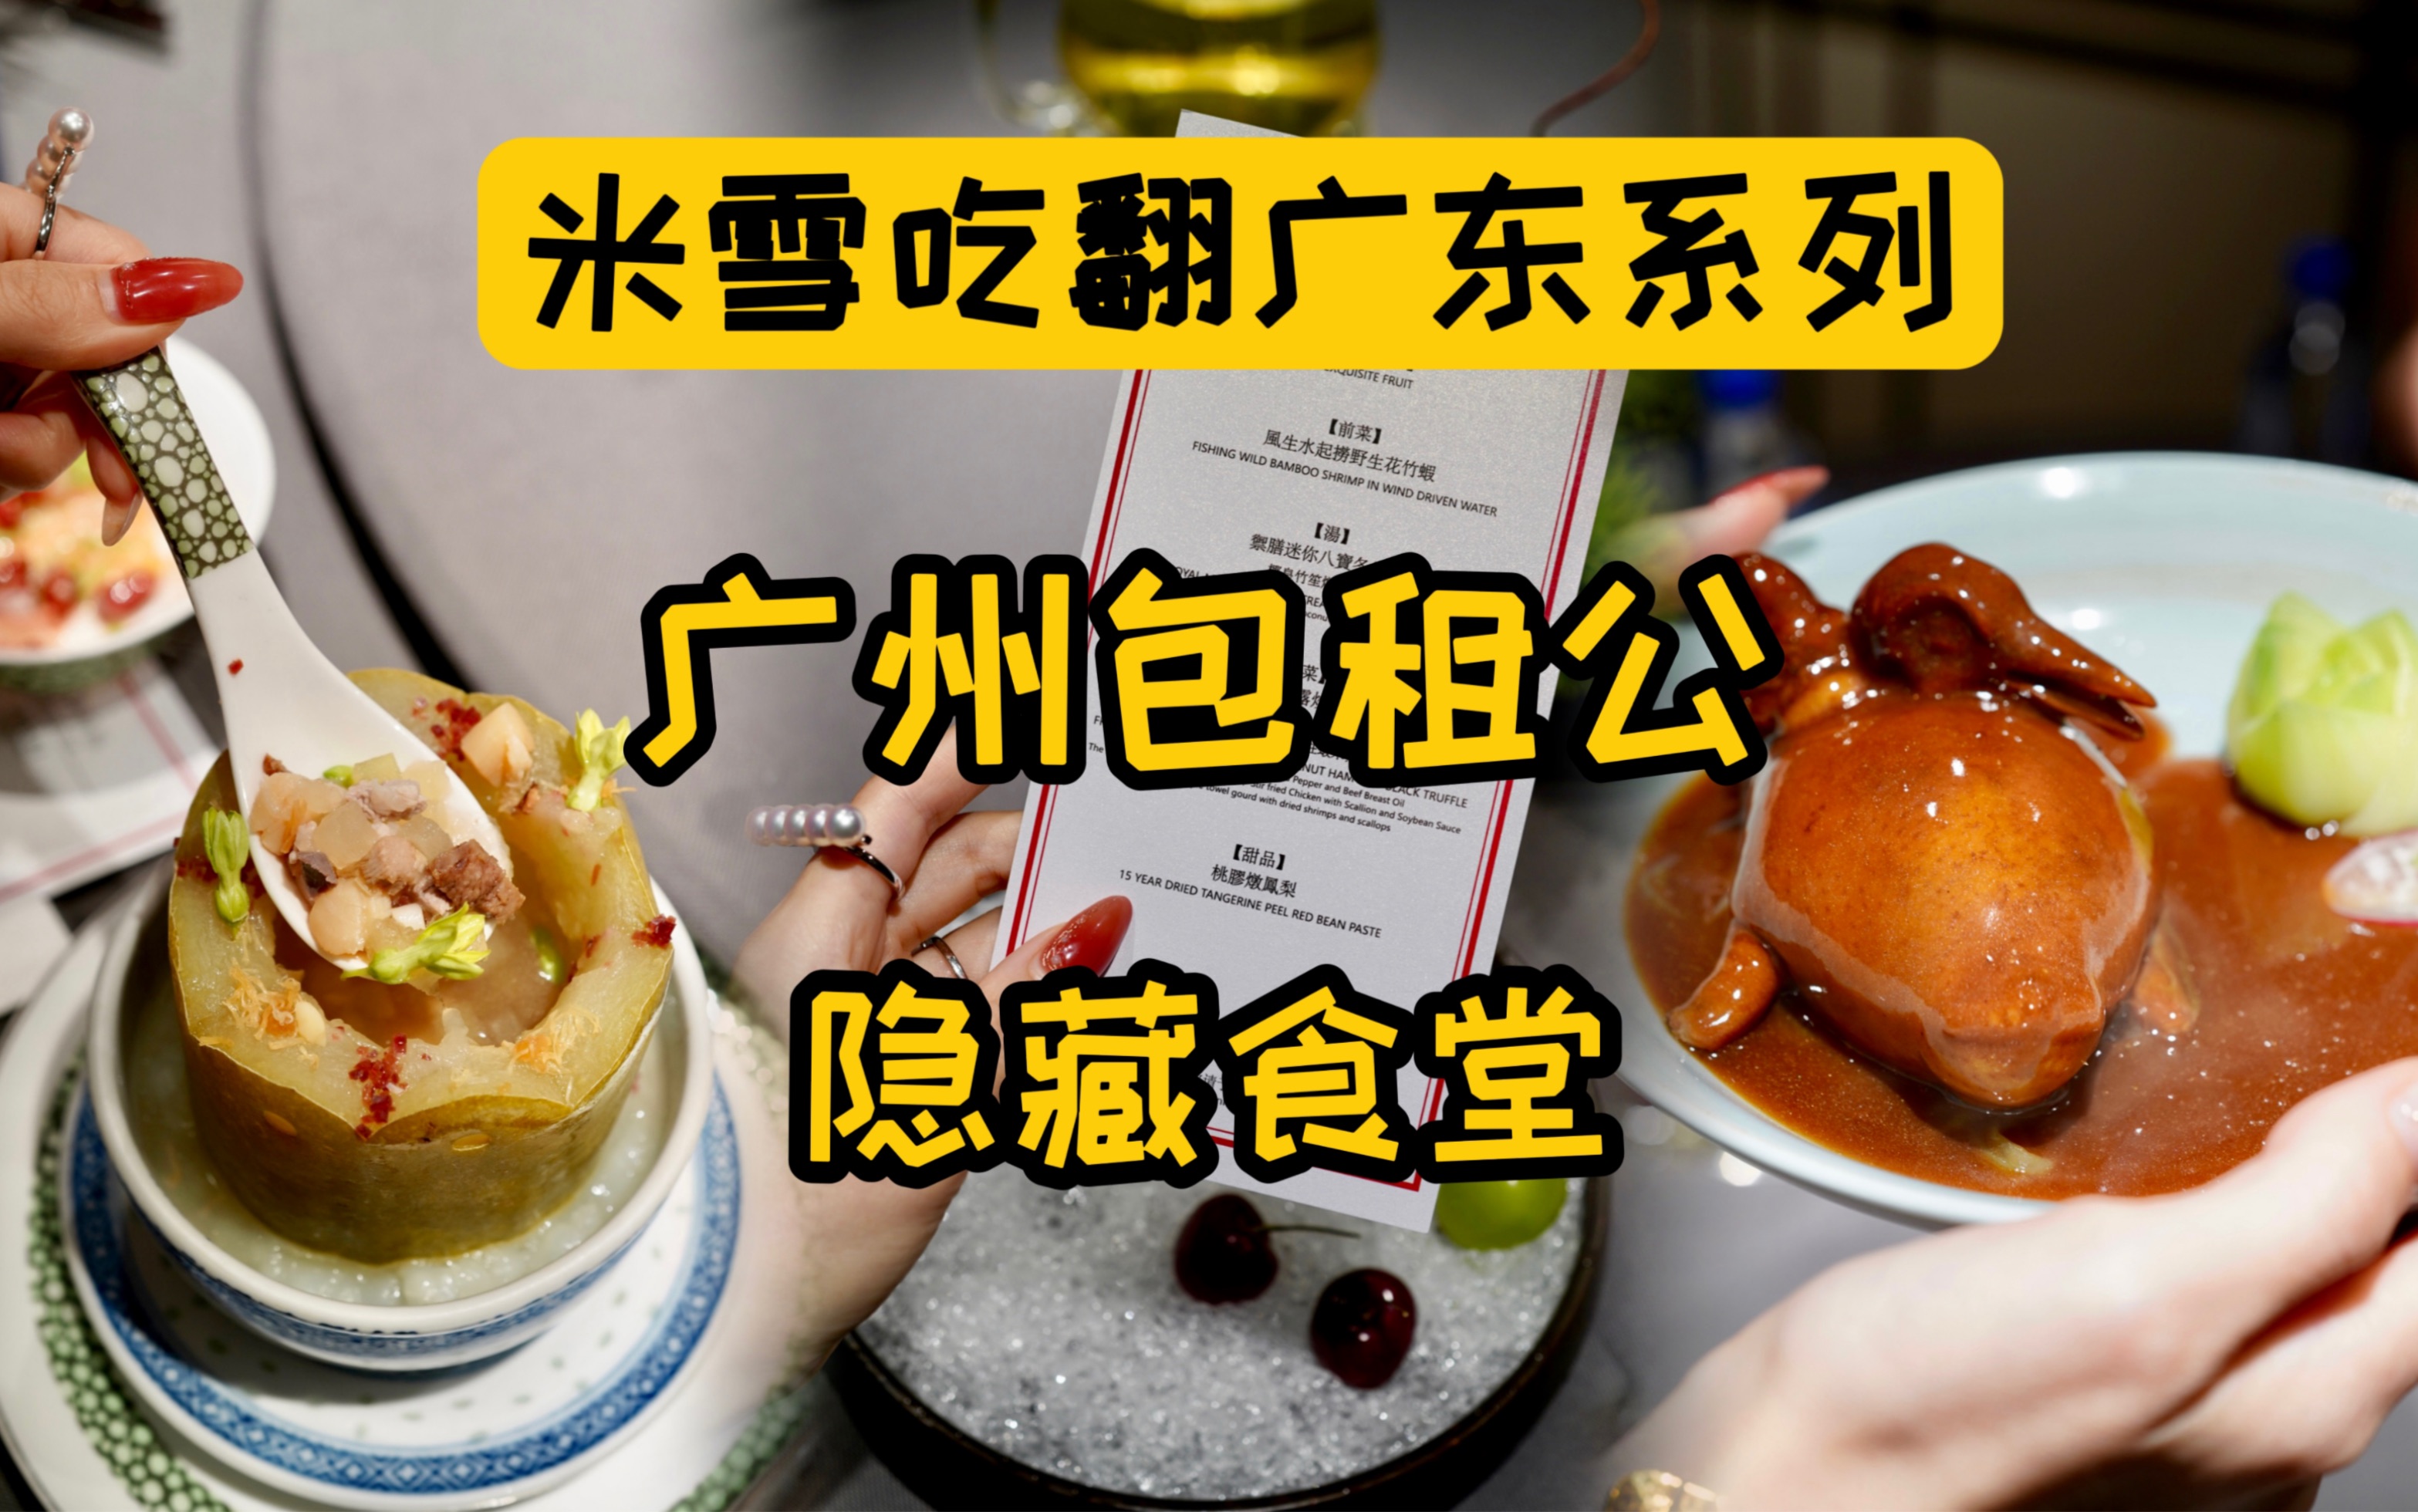 广州最有钱的猎德村村民食堂有个隐藏包房，看看能吃到啥？